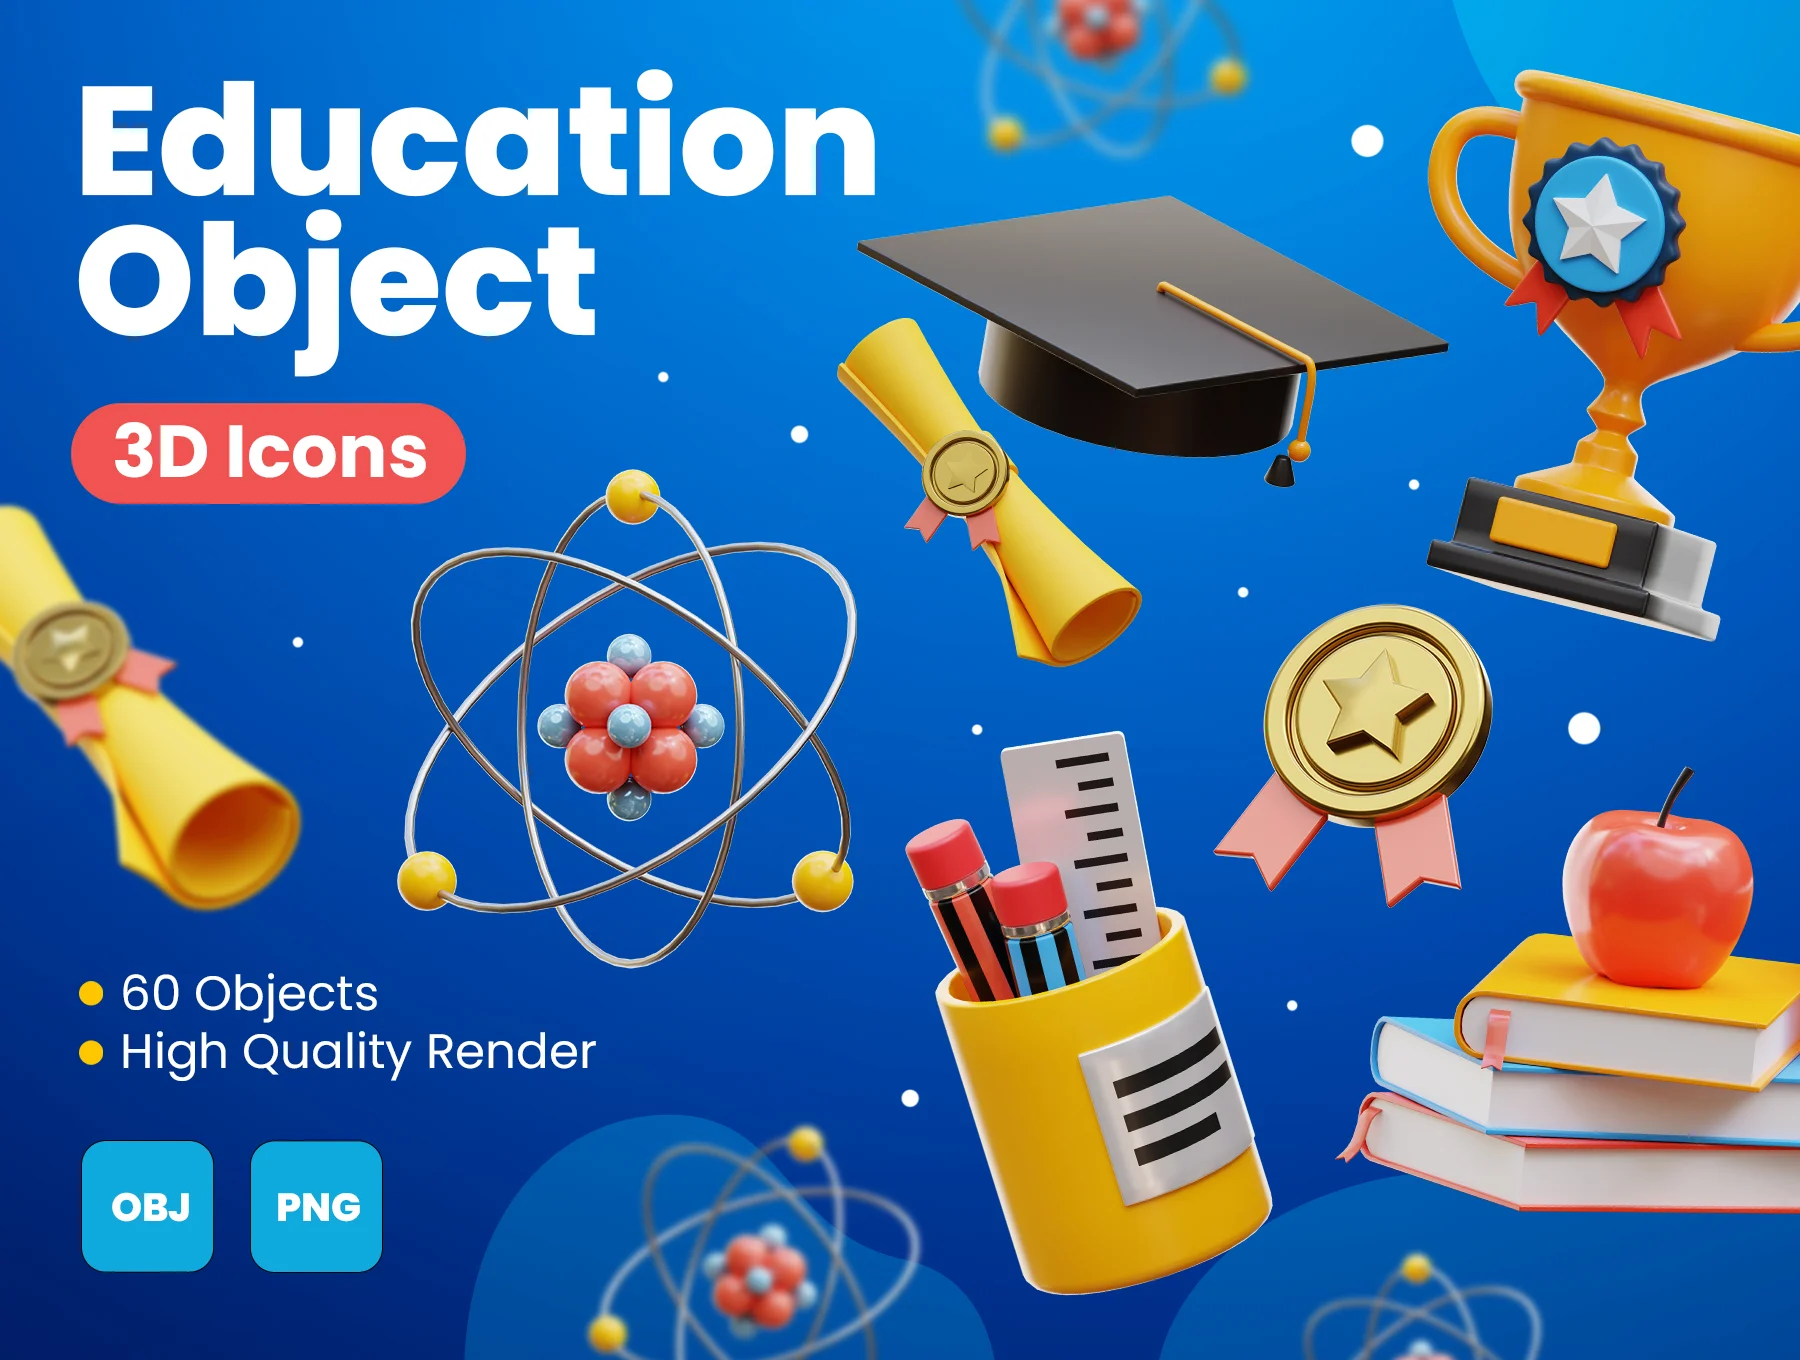 教育教具3D图标模型60款 Education Object 3D Icons .blender .psd-3D/图标-到位啦UI